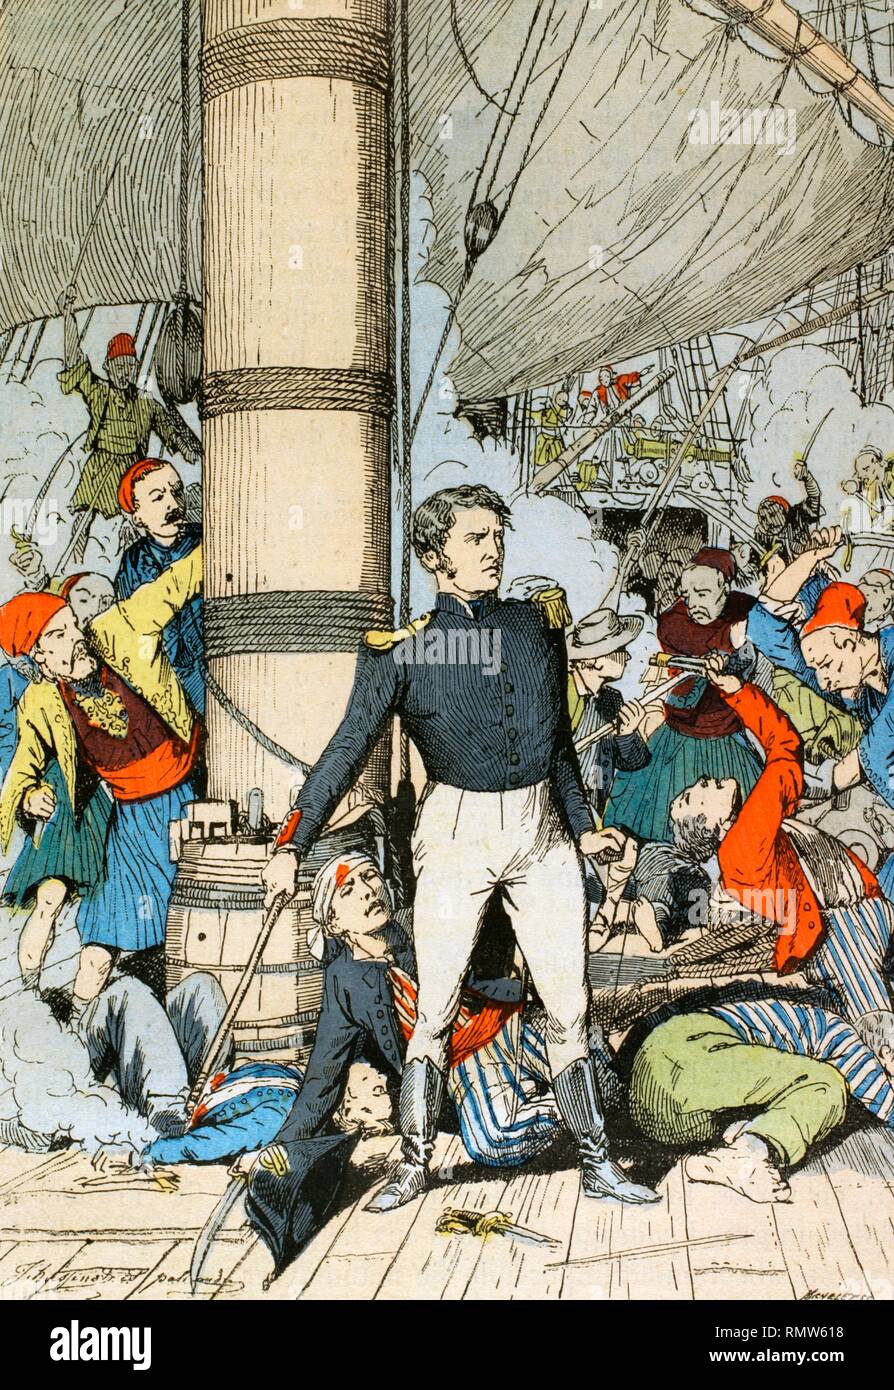 Hyppolite Magloire Bisson (1796-1827). Oficial de la marina fracesa. Ostentó el mando del bergantín 'Panayoti' durante la Guerra de Independencia Griega, el cual pertenecía a la flota del almirante de Rigny. Separado del resto de la flota, fué atacado por dos barcos piratas. Tras resultar él herido de gravedad, se hundió al volar el barco en lugar de rendirse, 6 de noviembre de 1827. Ilustración en color de la 'Armeé Française, Nos Soldats' (Ejército Francés, Nuestros Soldados). Autor, Eugene Hennebert (1826-1896). Ilustración firmada por Hussenot y Pallandre. París, h. 1890. Biblioteca Histór Stock Photo